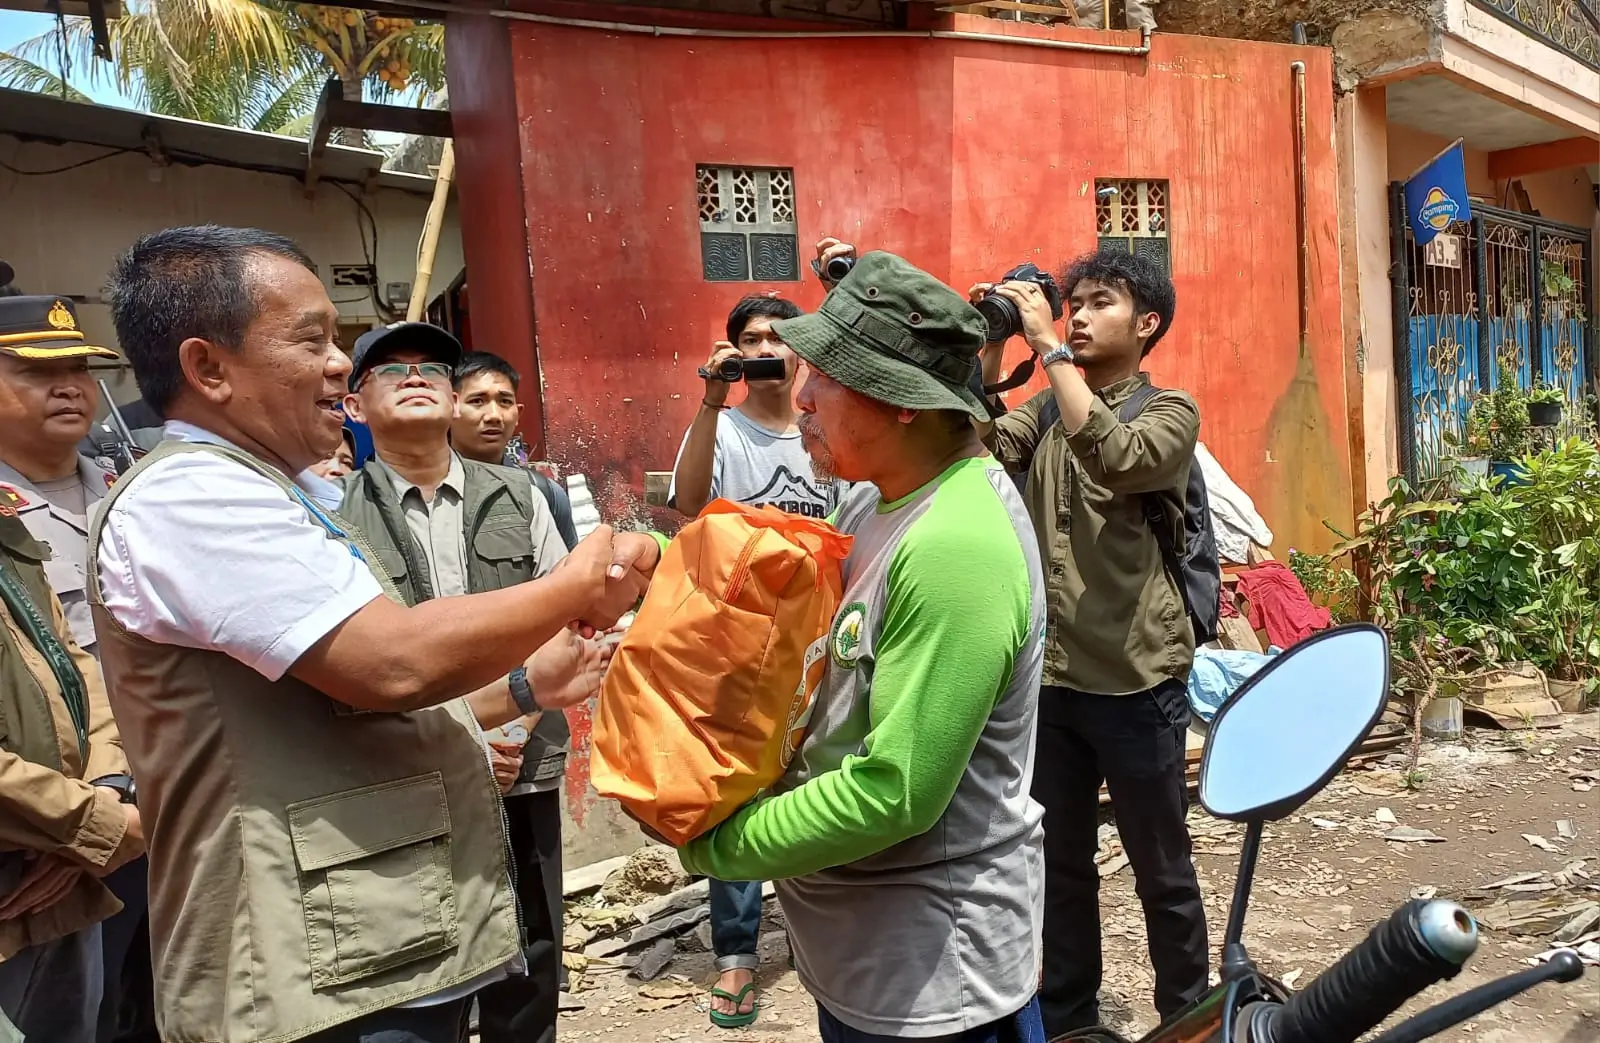 BNPB Serahkan Dukungan Penanganan Angin Puting Beliung Kabupaten Bandung